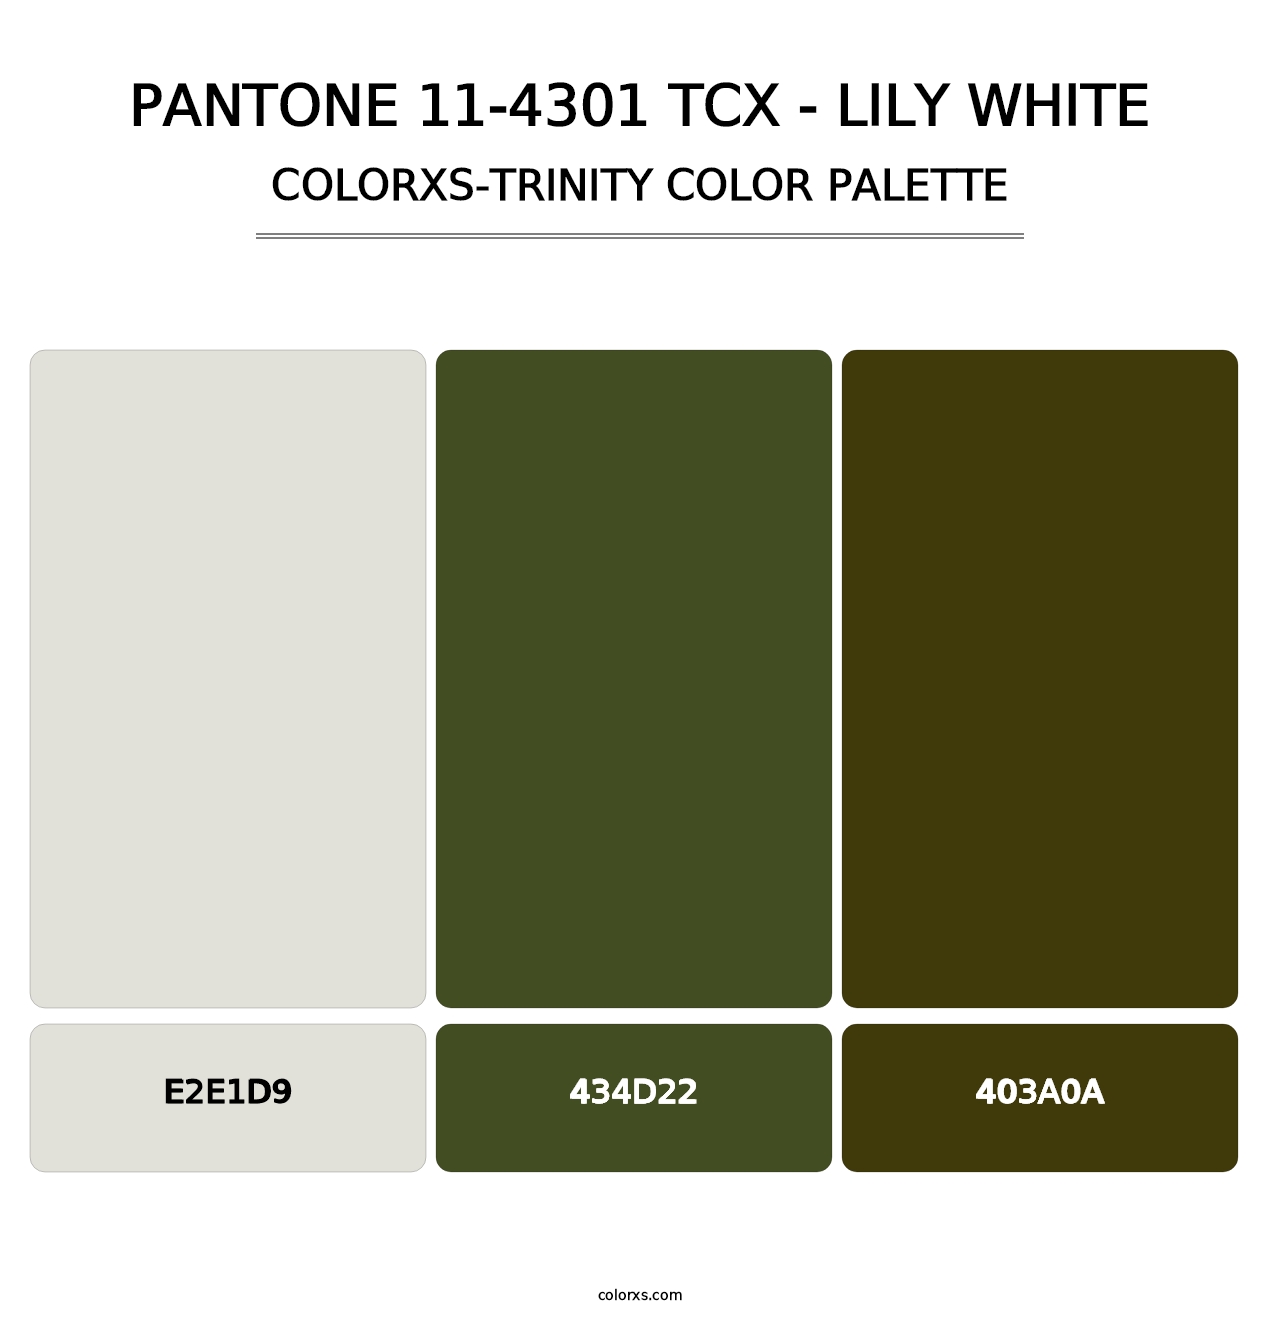 PANTONE 11-4301 TCX - Lily White - Colorxs Trinity Palette